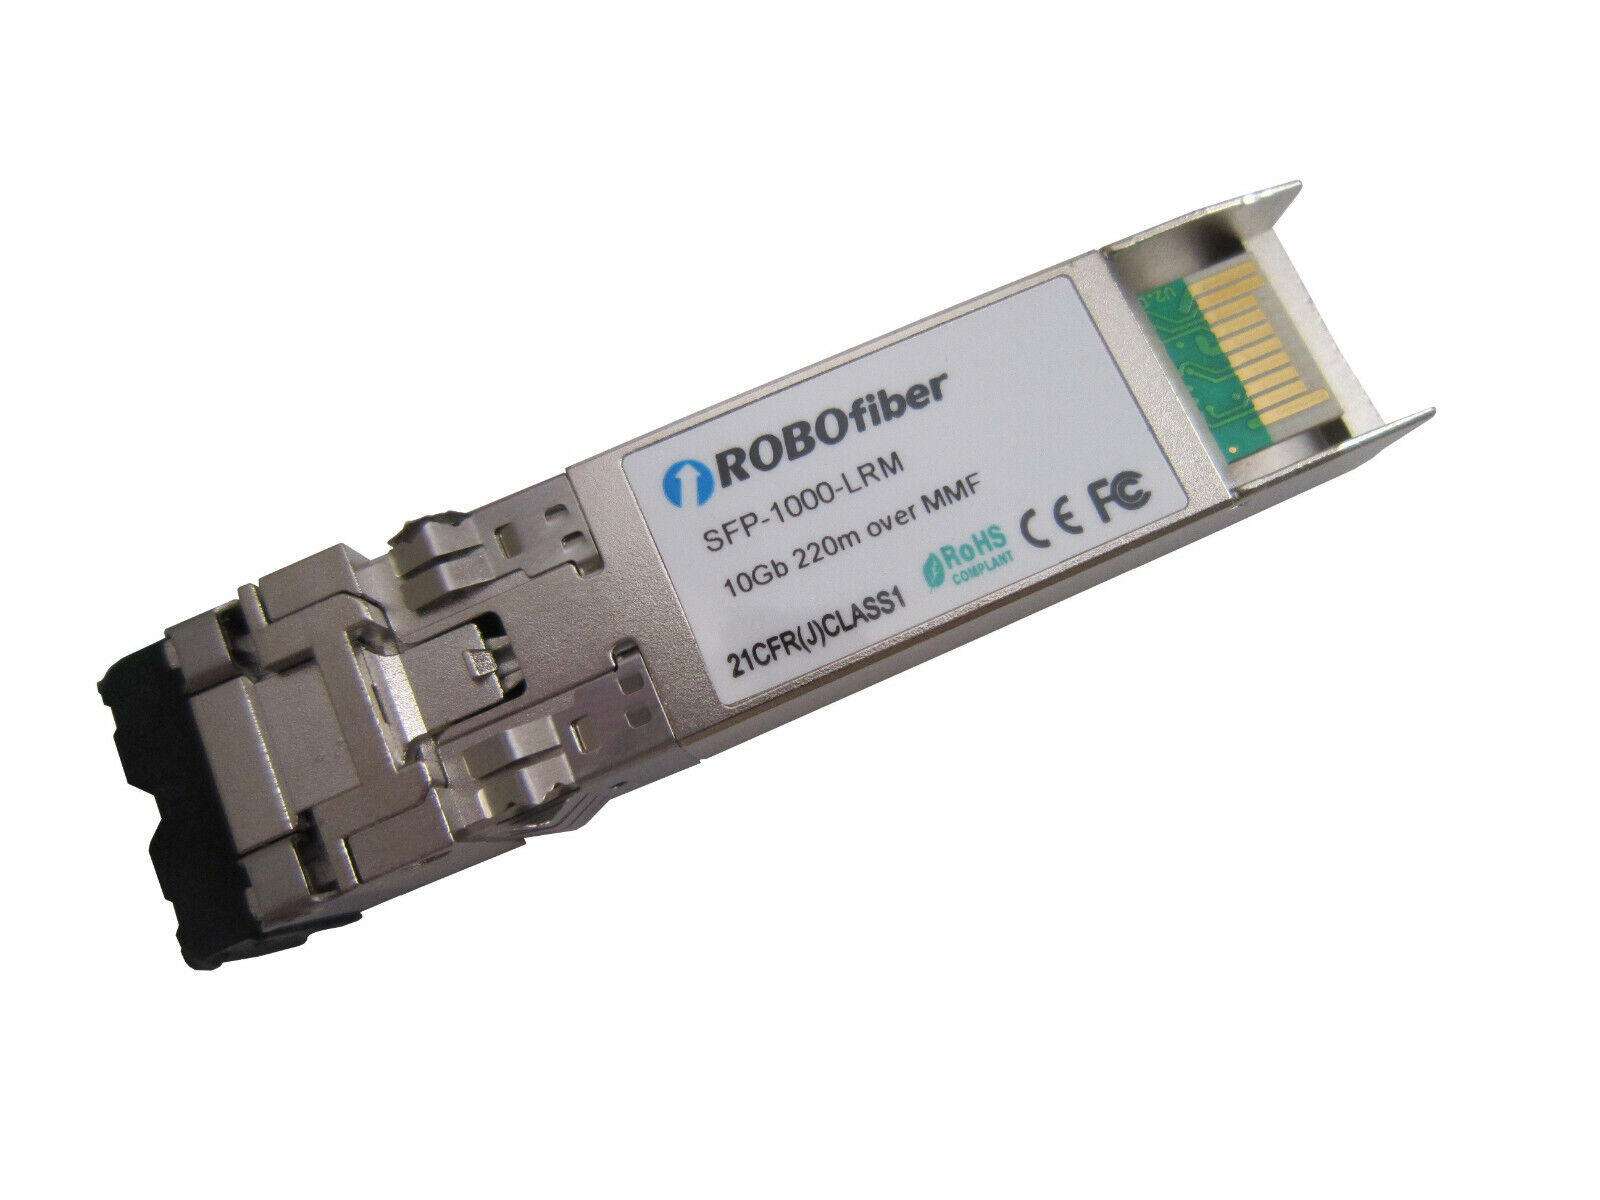 10G SFP+ transceiver multimode LRM 1310nm 220m range on OM1, Cisco compatible